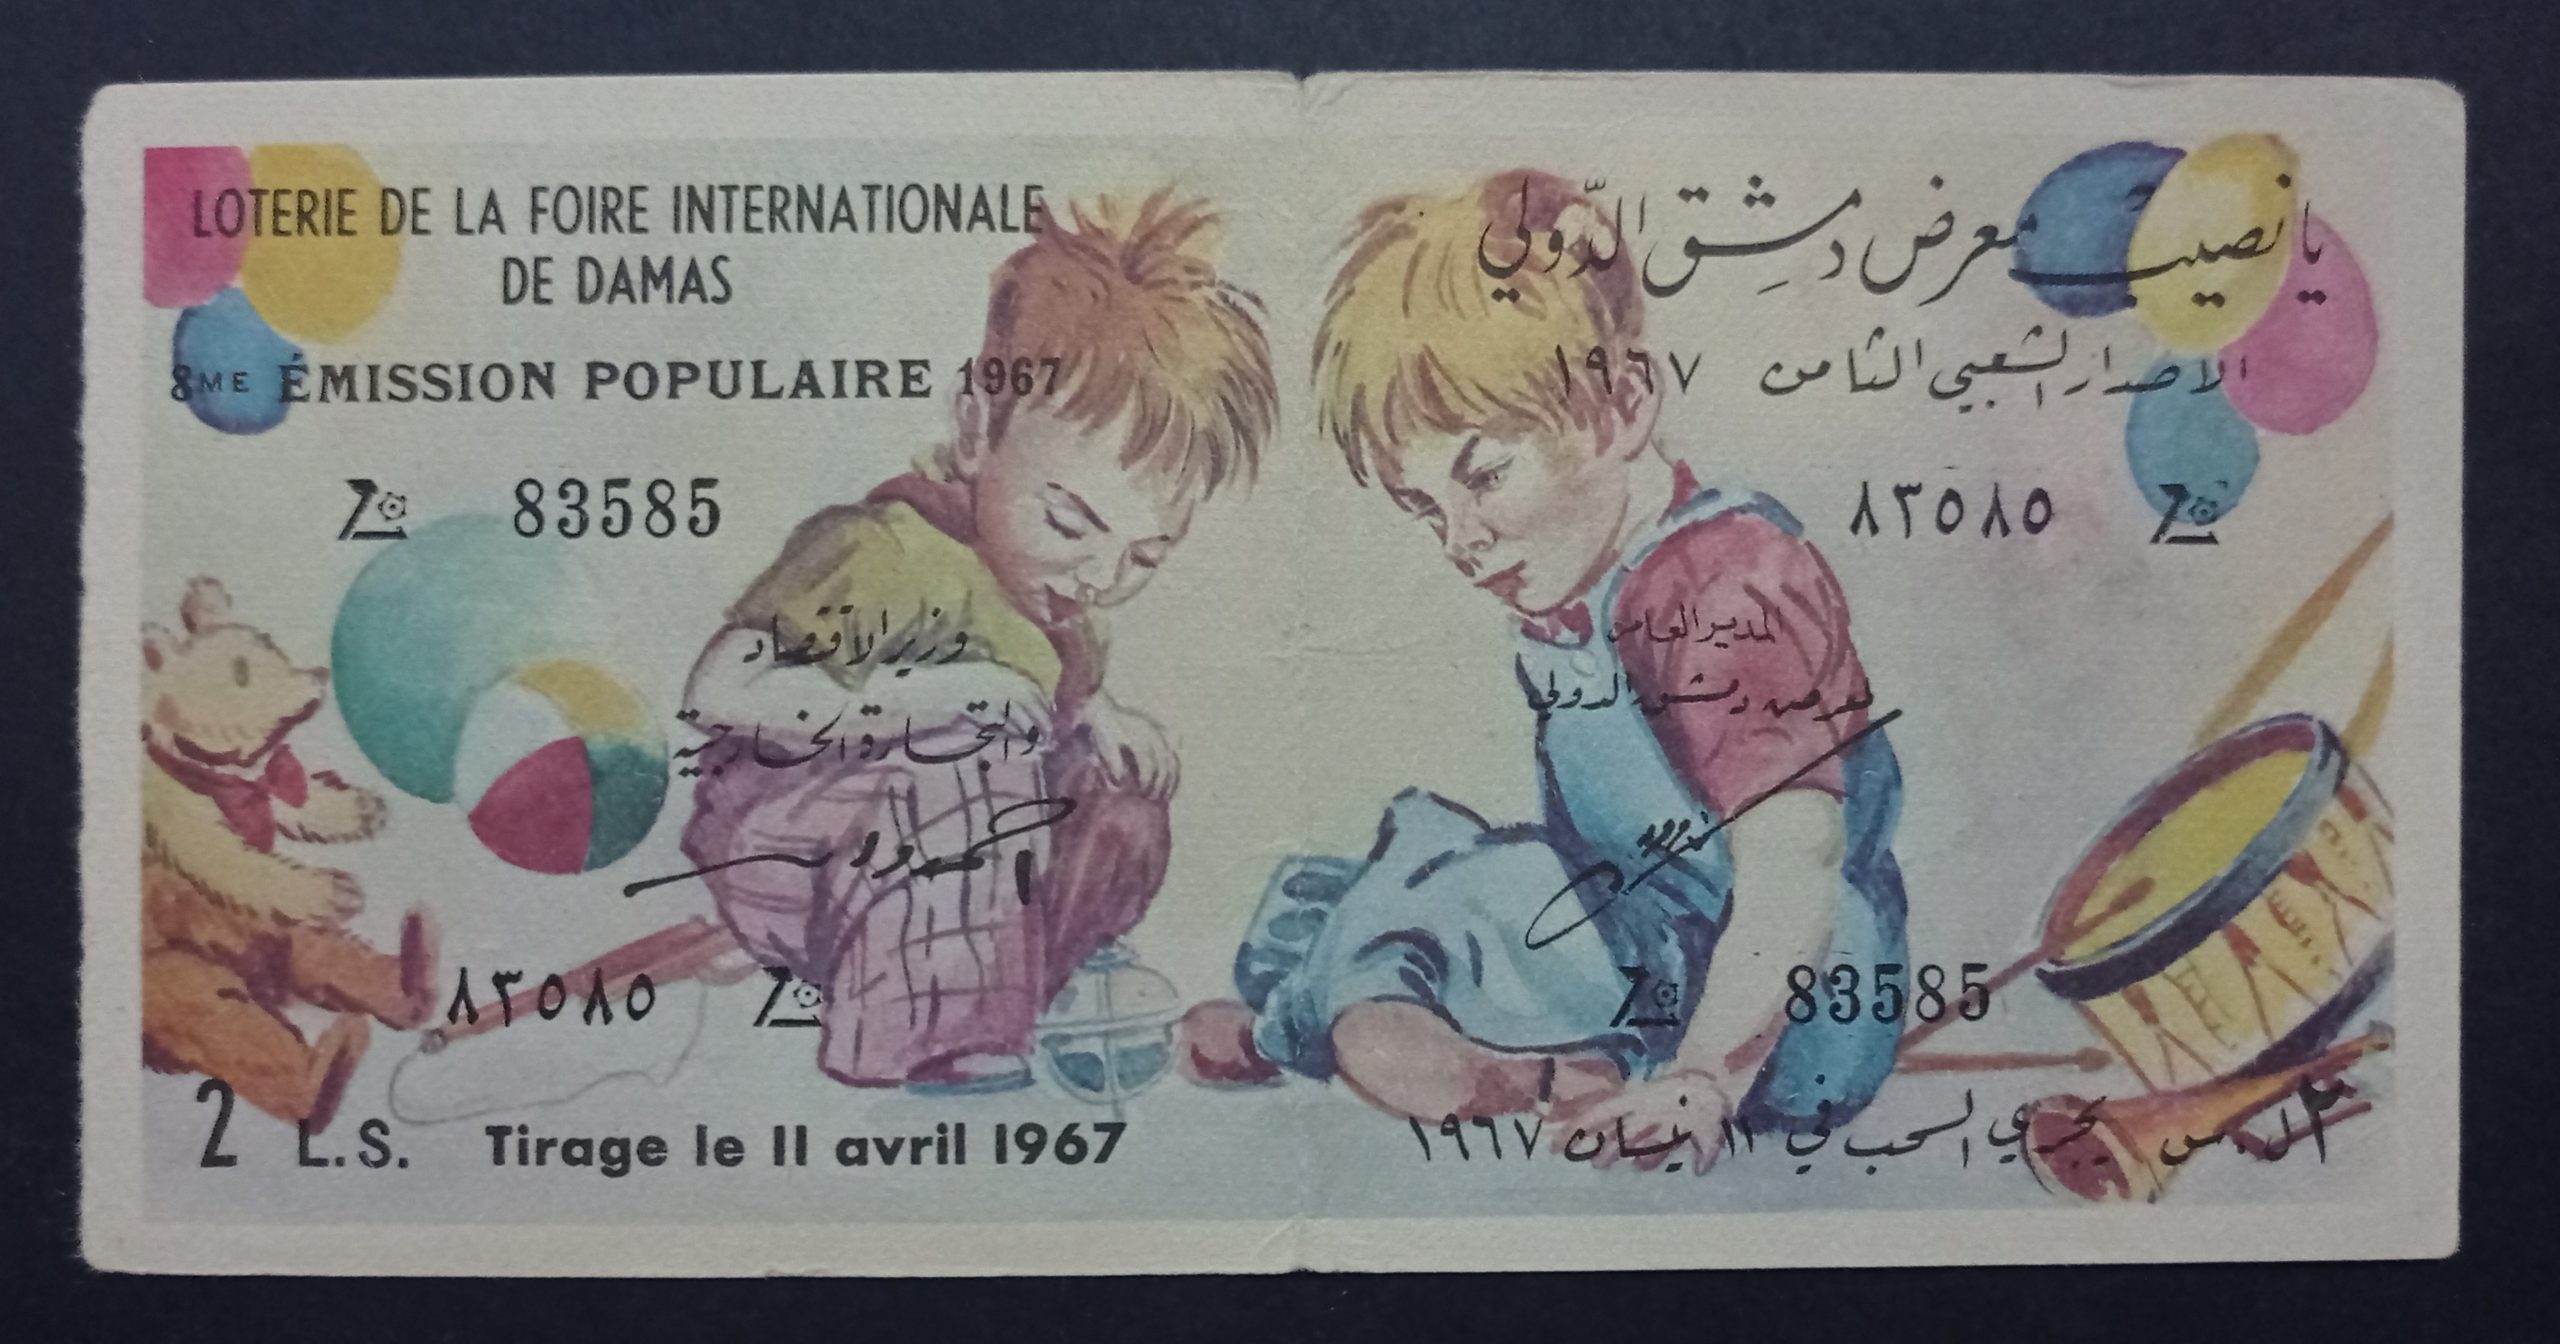 التاريخ السوري المعاصر - يانصيب معرض دمشق الدولي - الإصدار الشعبي الثامن عام 1967